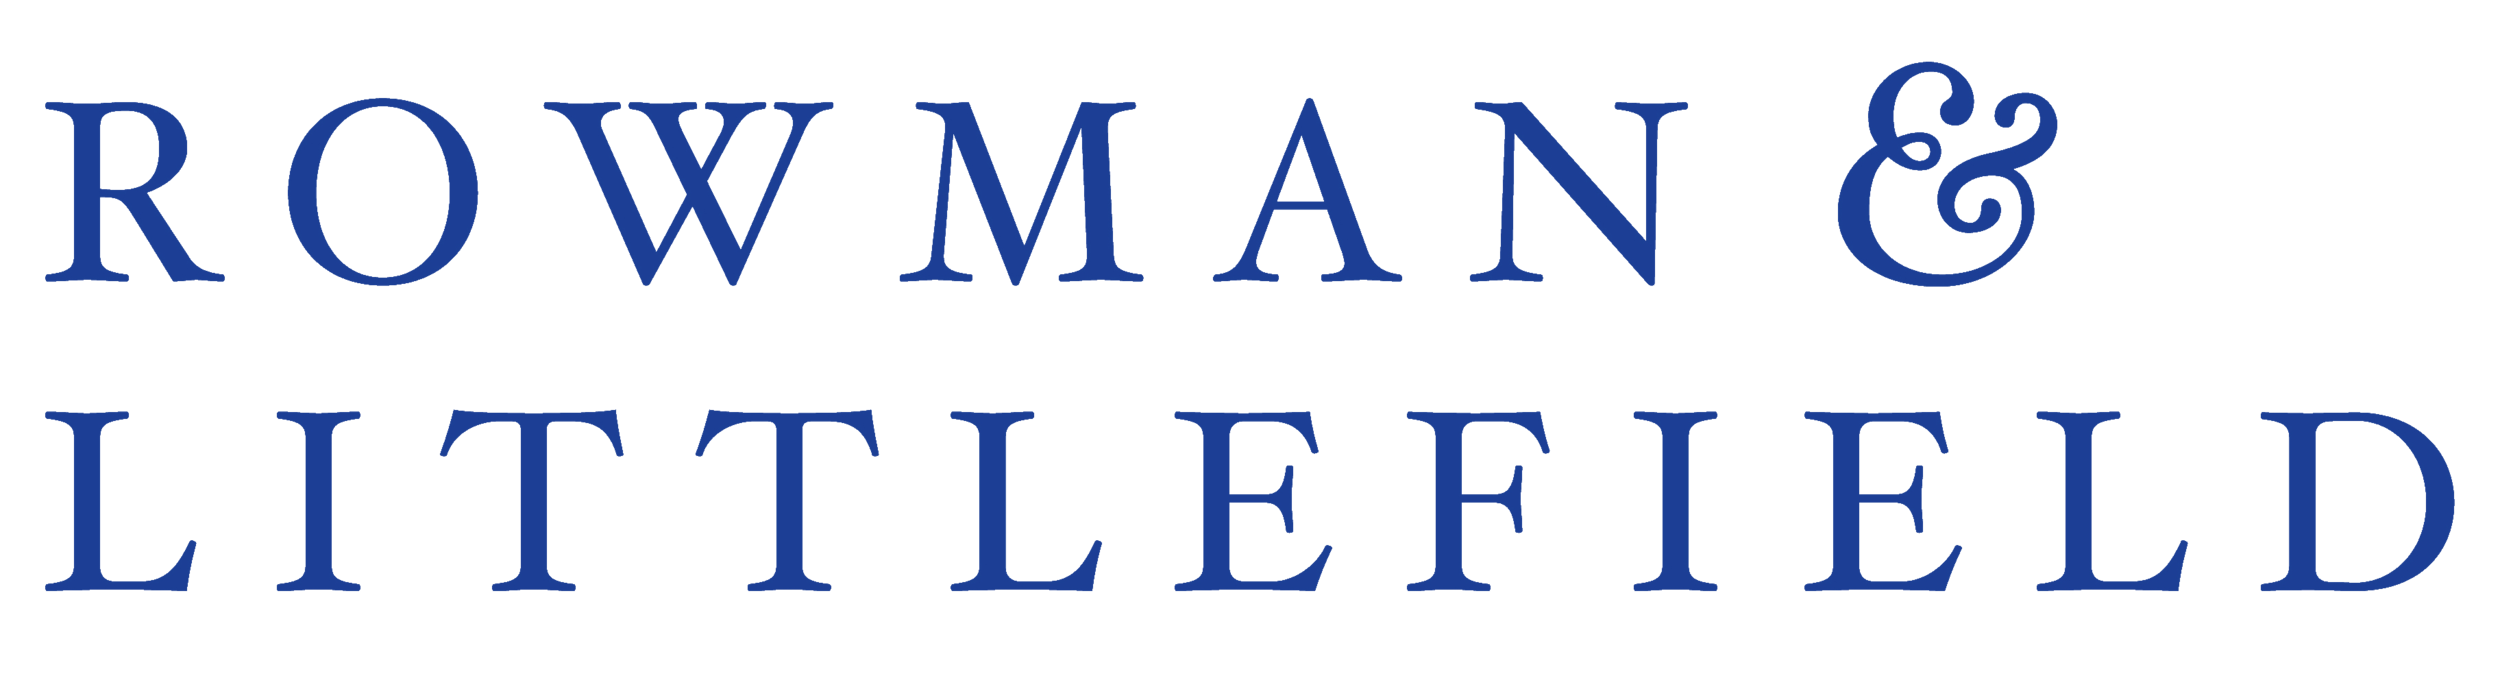 rowman-littlefield-logo-transparent.png